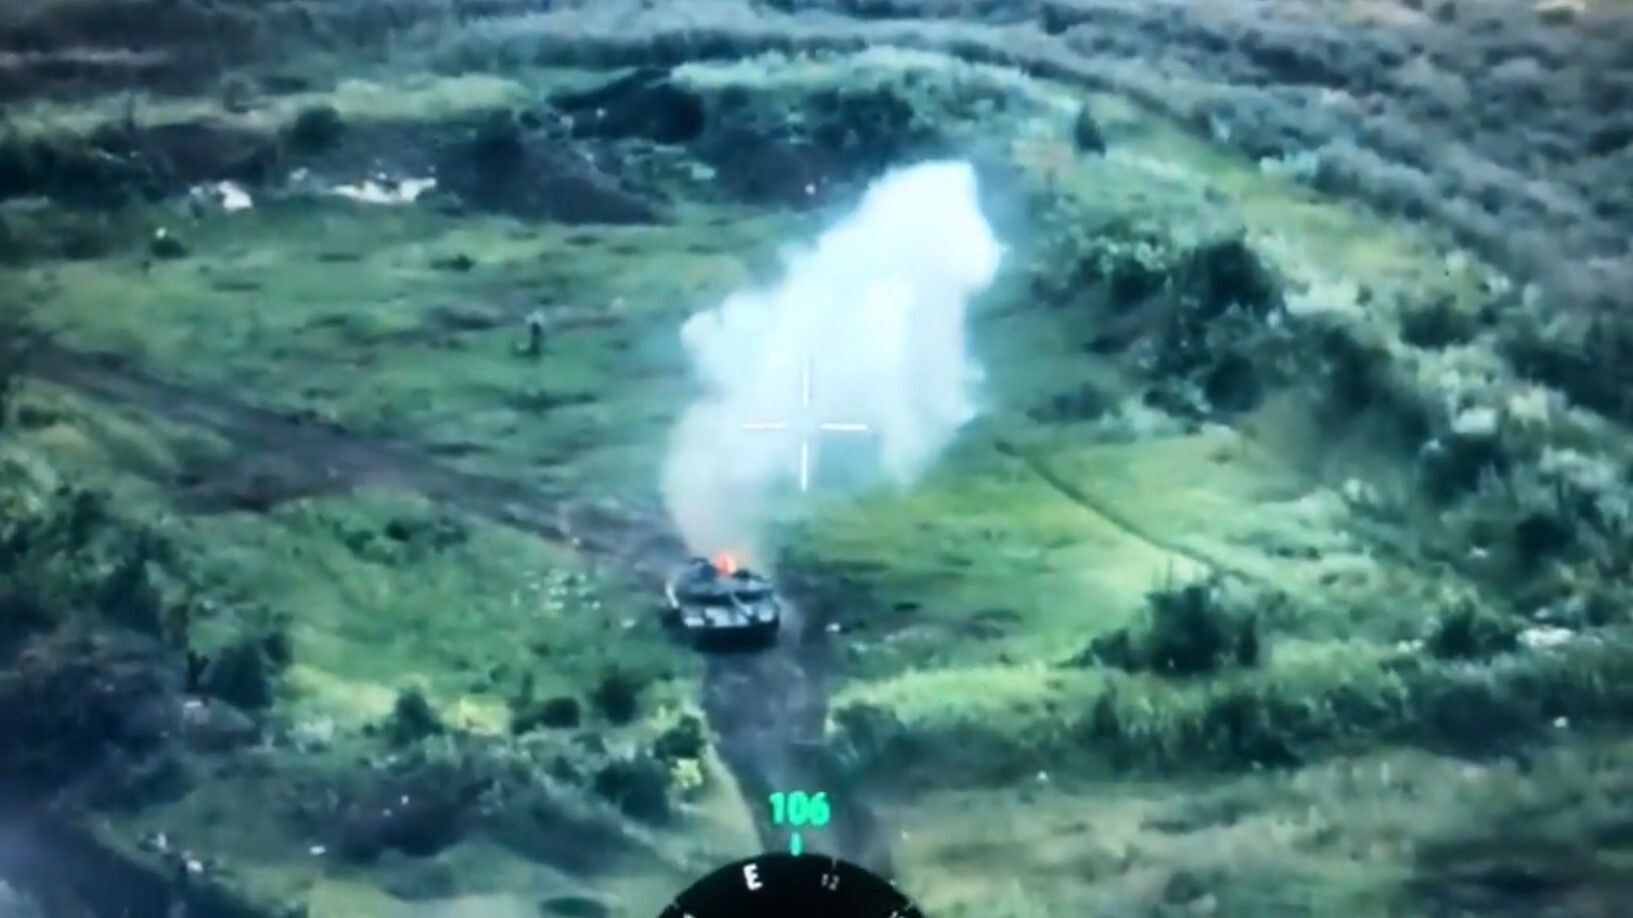 "Досить курити, де попало": у мережі показали відео влучання в улюблений танк Путіна "Прорив"